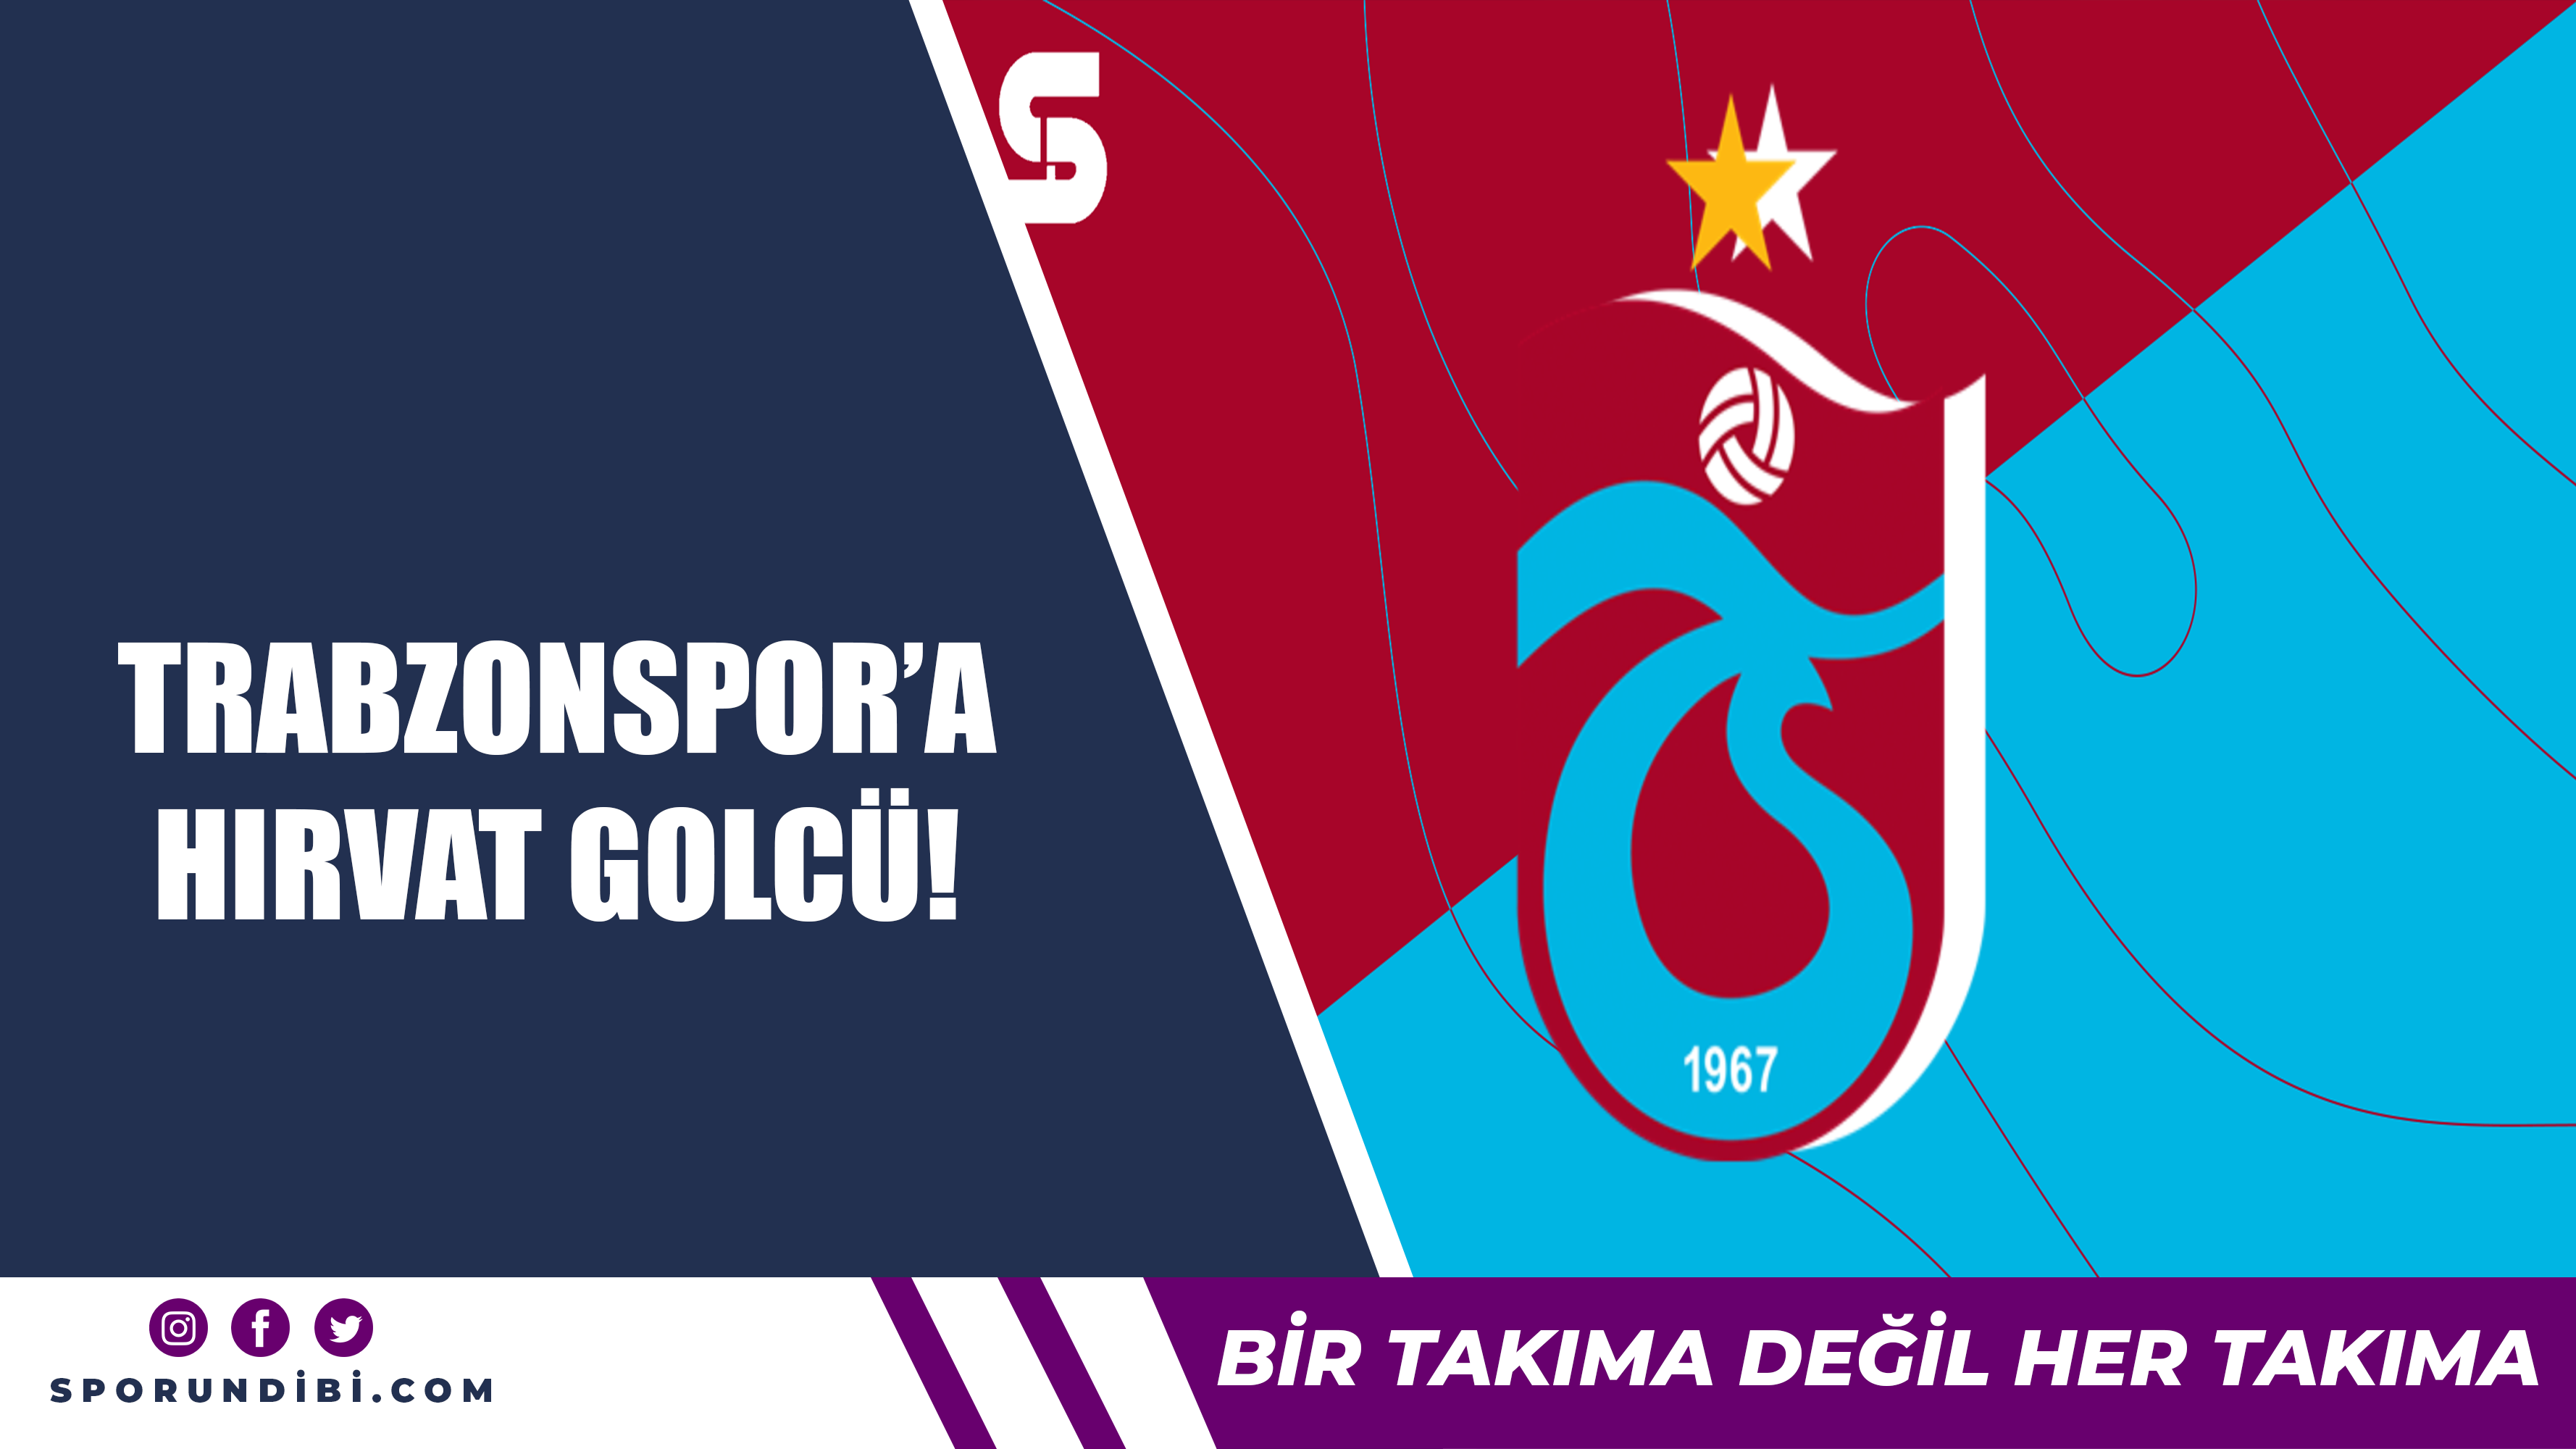 Trabzonspor'a Hırvat golcü!